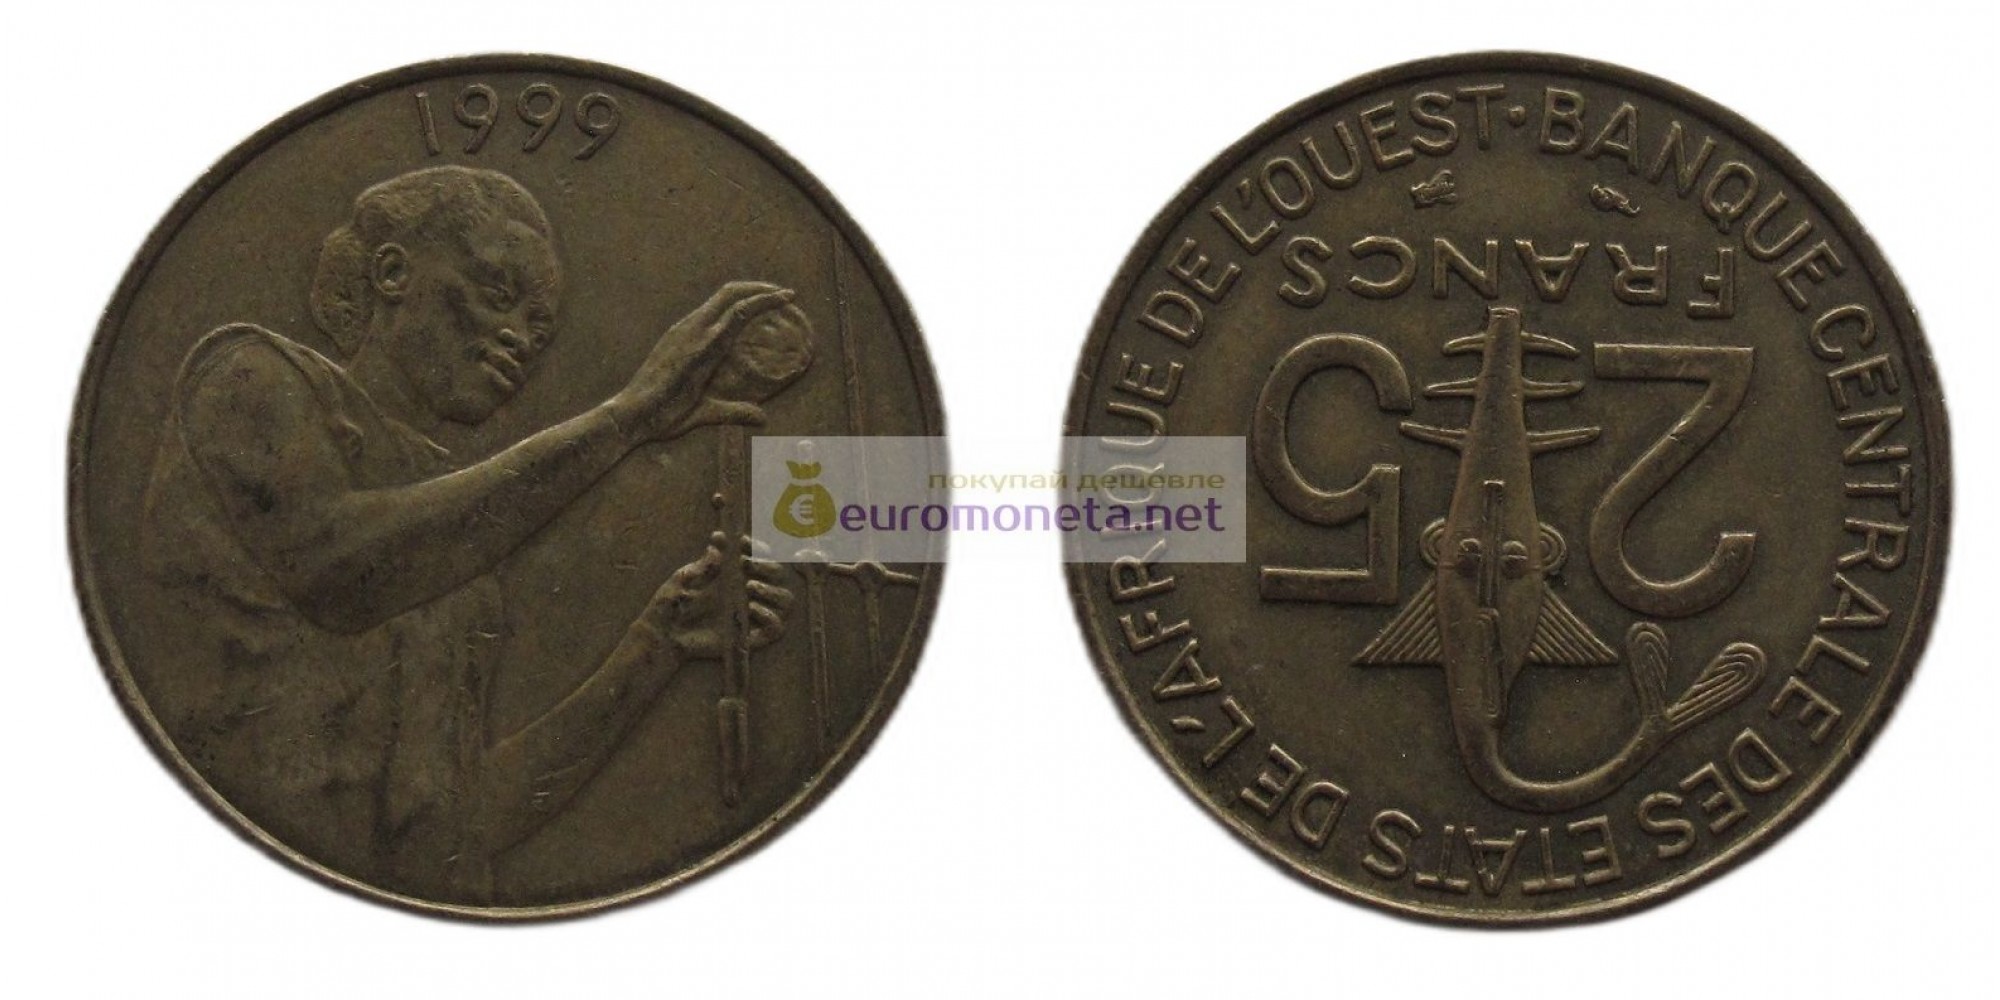 Западная Африка (BCEAO) 25 франков 1999 год. 